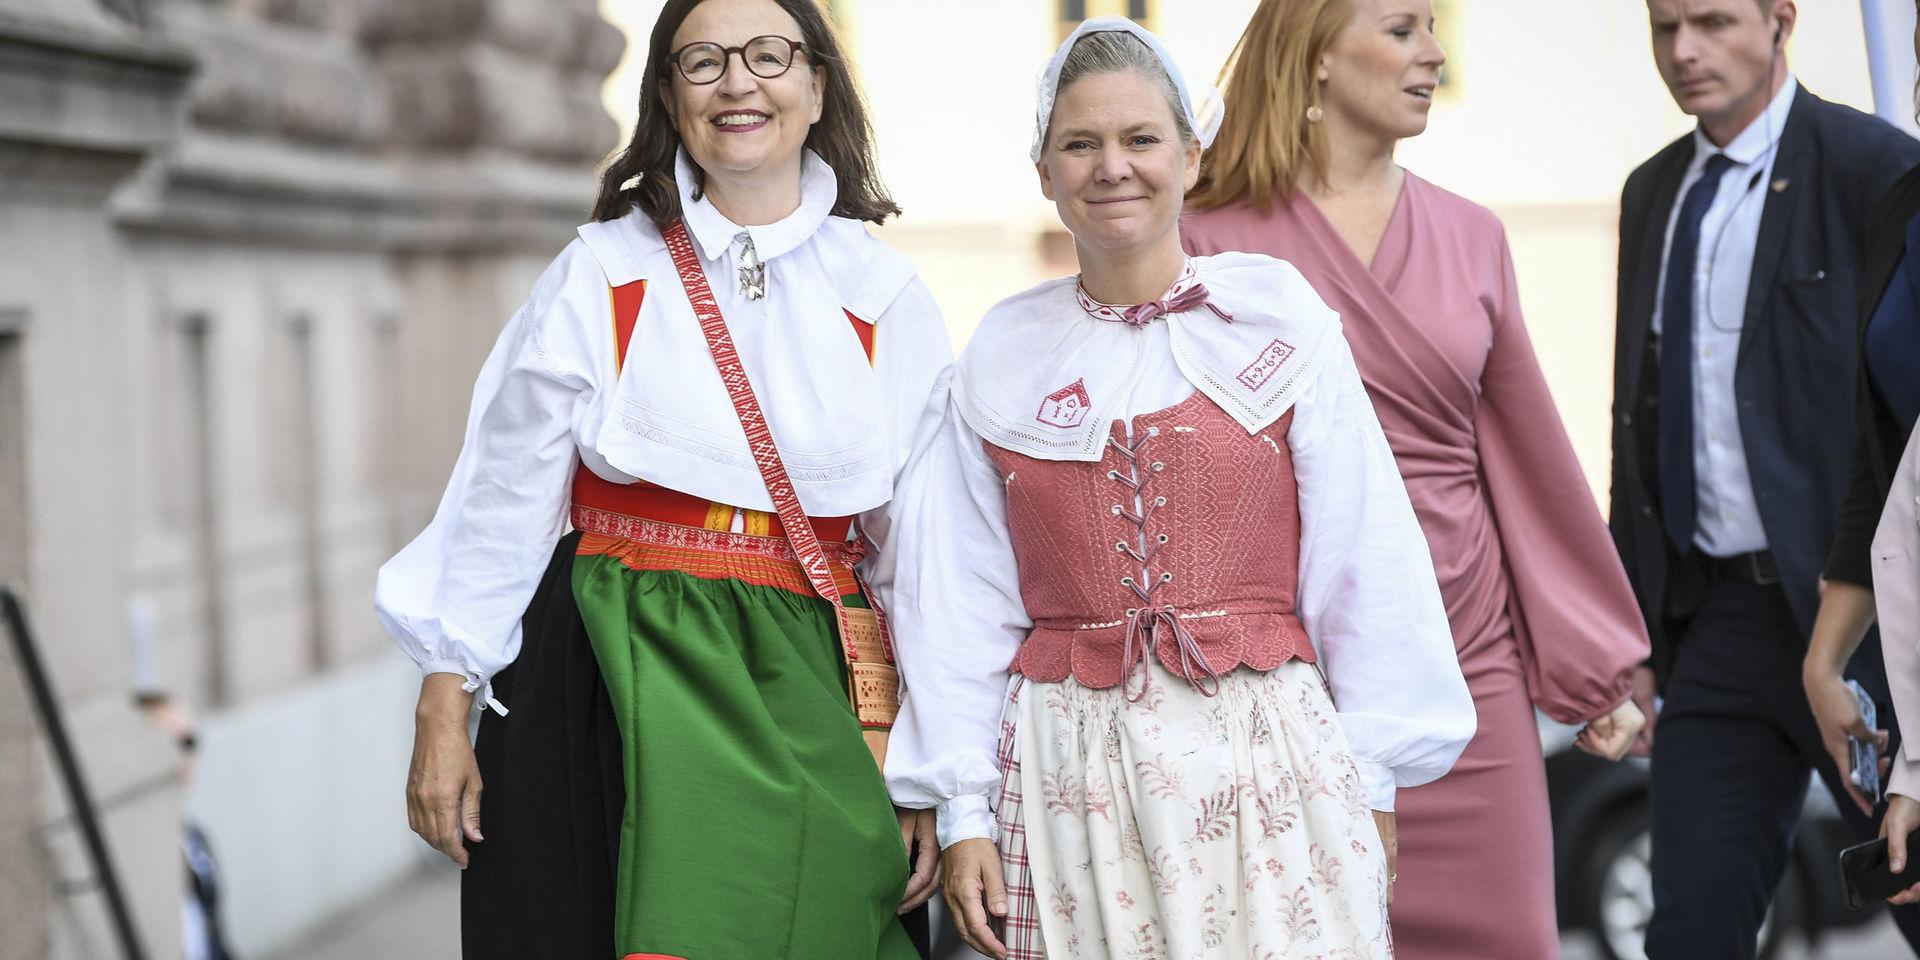 Finansminister Magdalena Andersson och utbildningsminister Anna Ekström iklädda folkdräkt anländer till riksdagshuset.